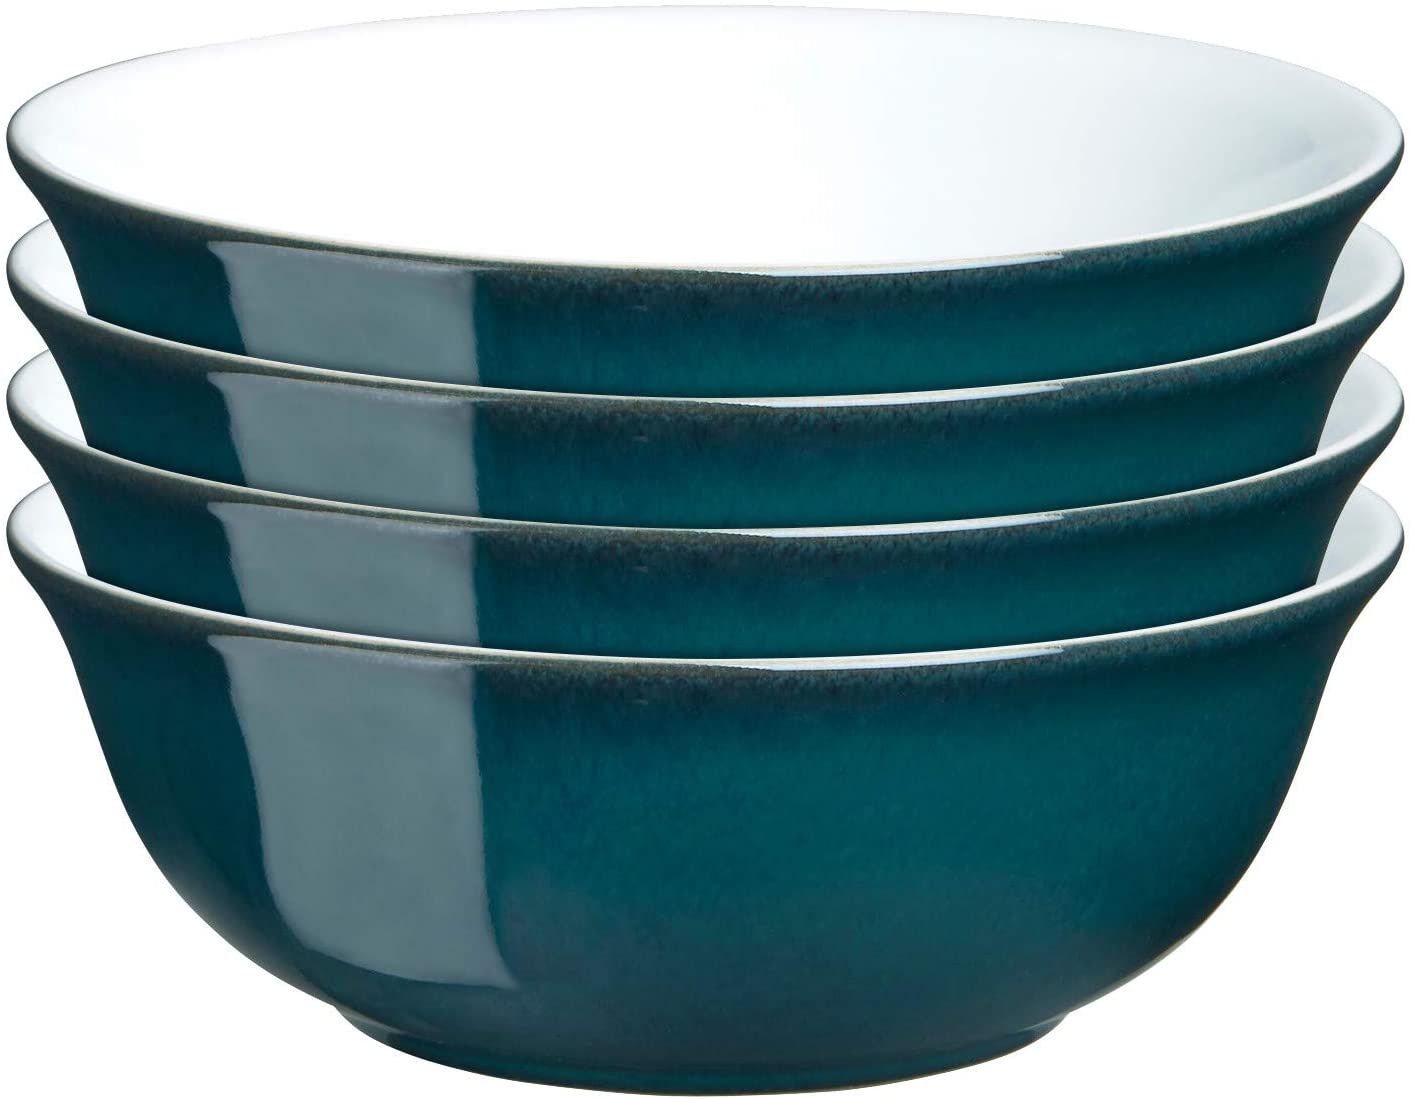 Denby Azure Cereal Bowl, Set of 4